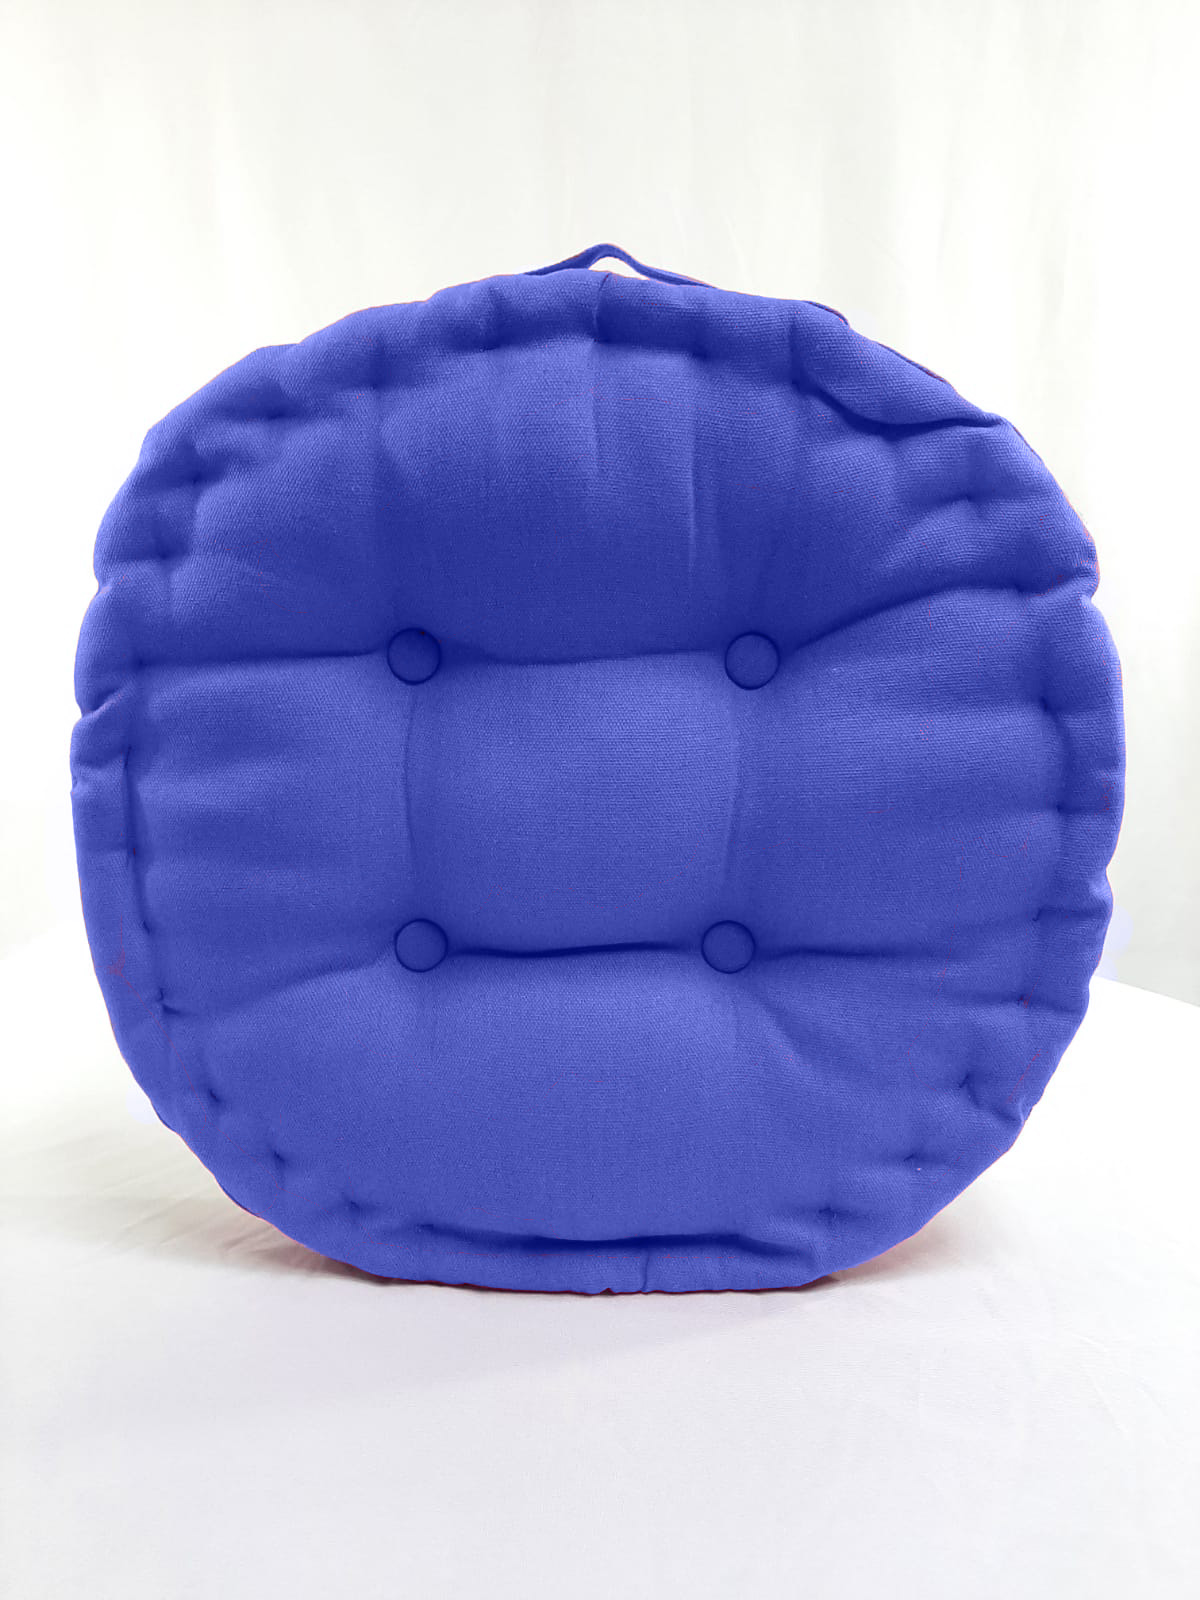 cojín para silla redonda loneta lisa color azul 2.95 euros